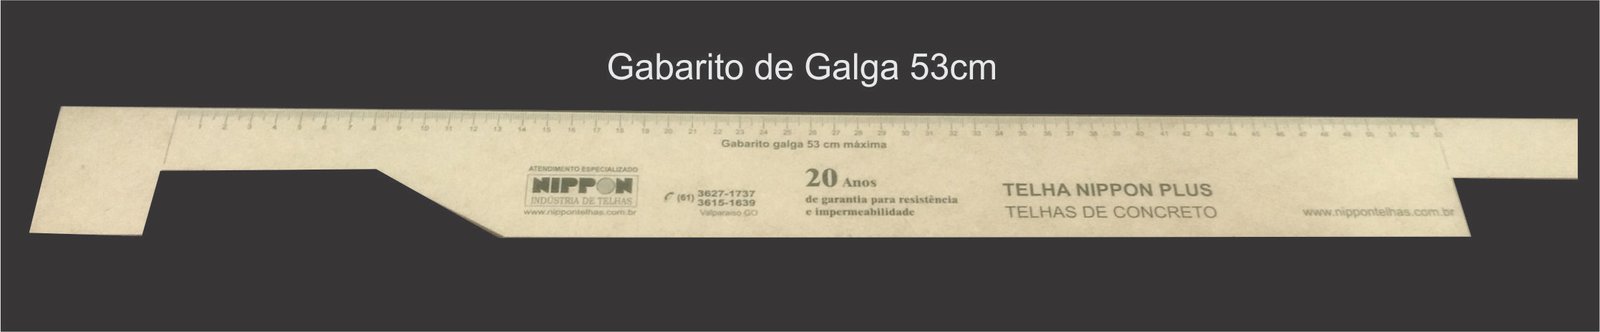 Gabarito de Galga